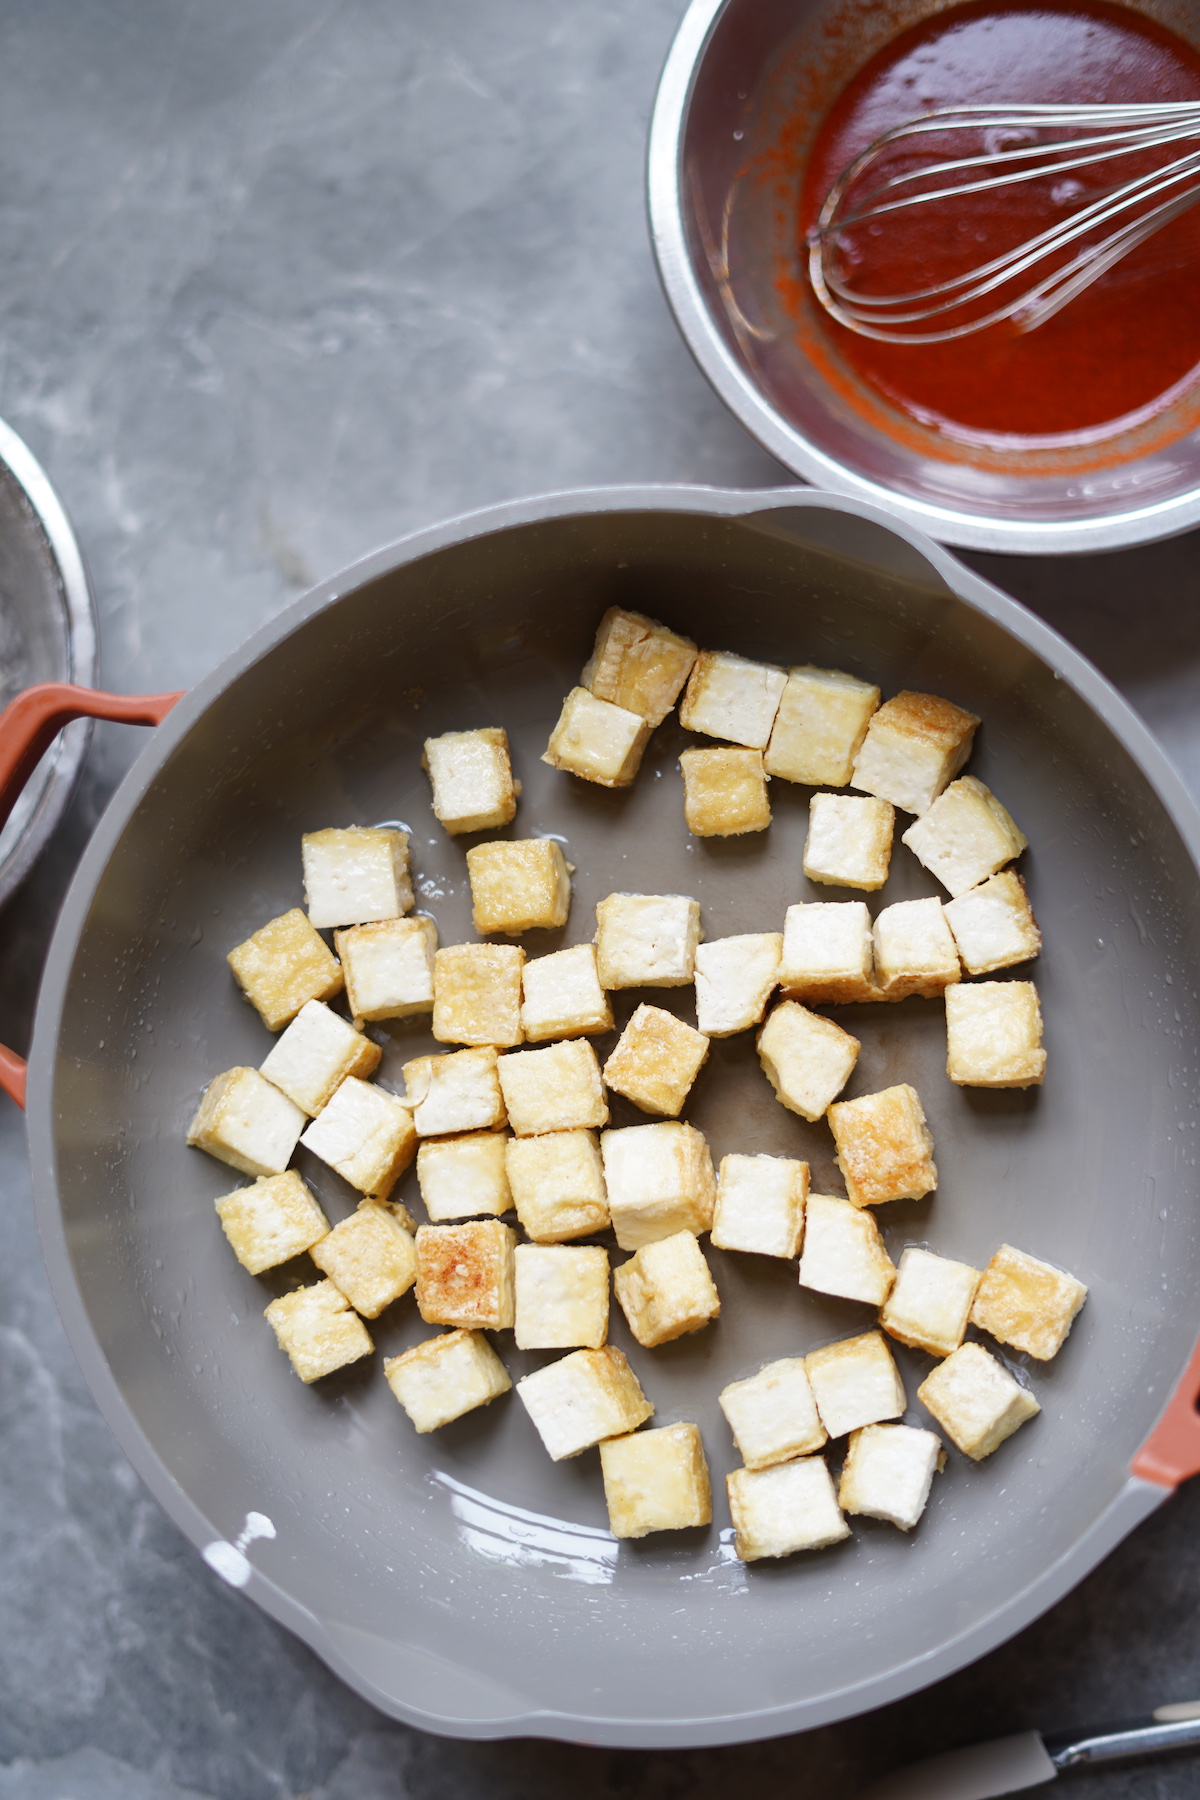 Pan-fry tofu cubes until golden.